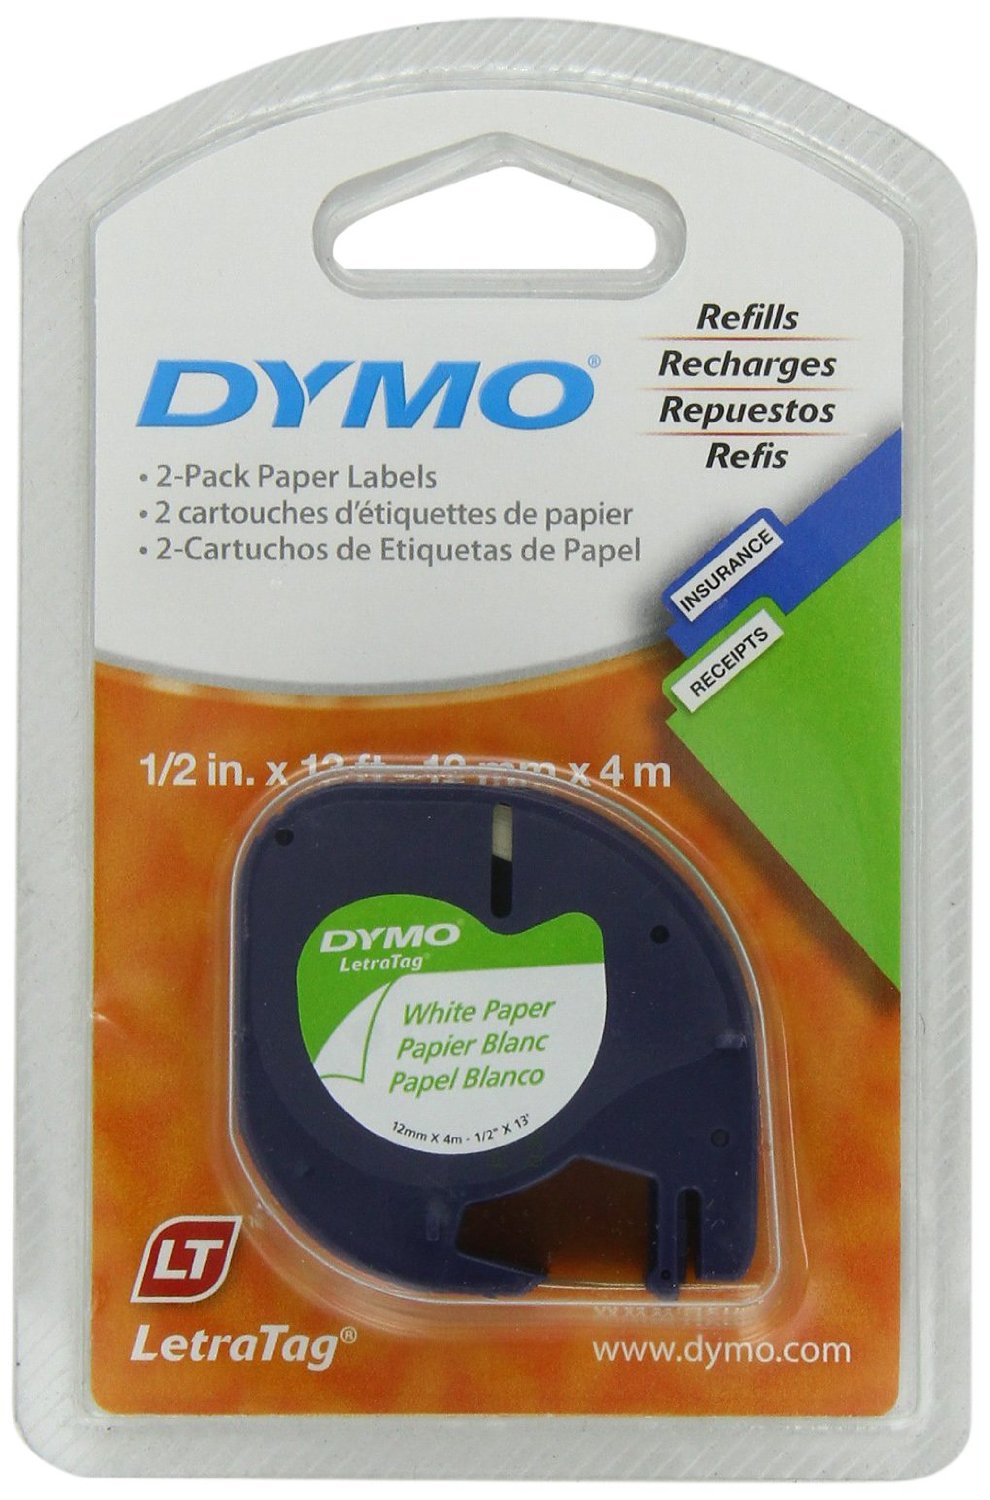 DYMO 10697 Self-Adhesive Paper Tape for LetraTag Label Makers, 1/2 pulgada , Blanca, rollo de 13 pies (4 metros), paquete de 2 piezas.